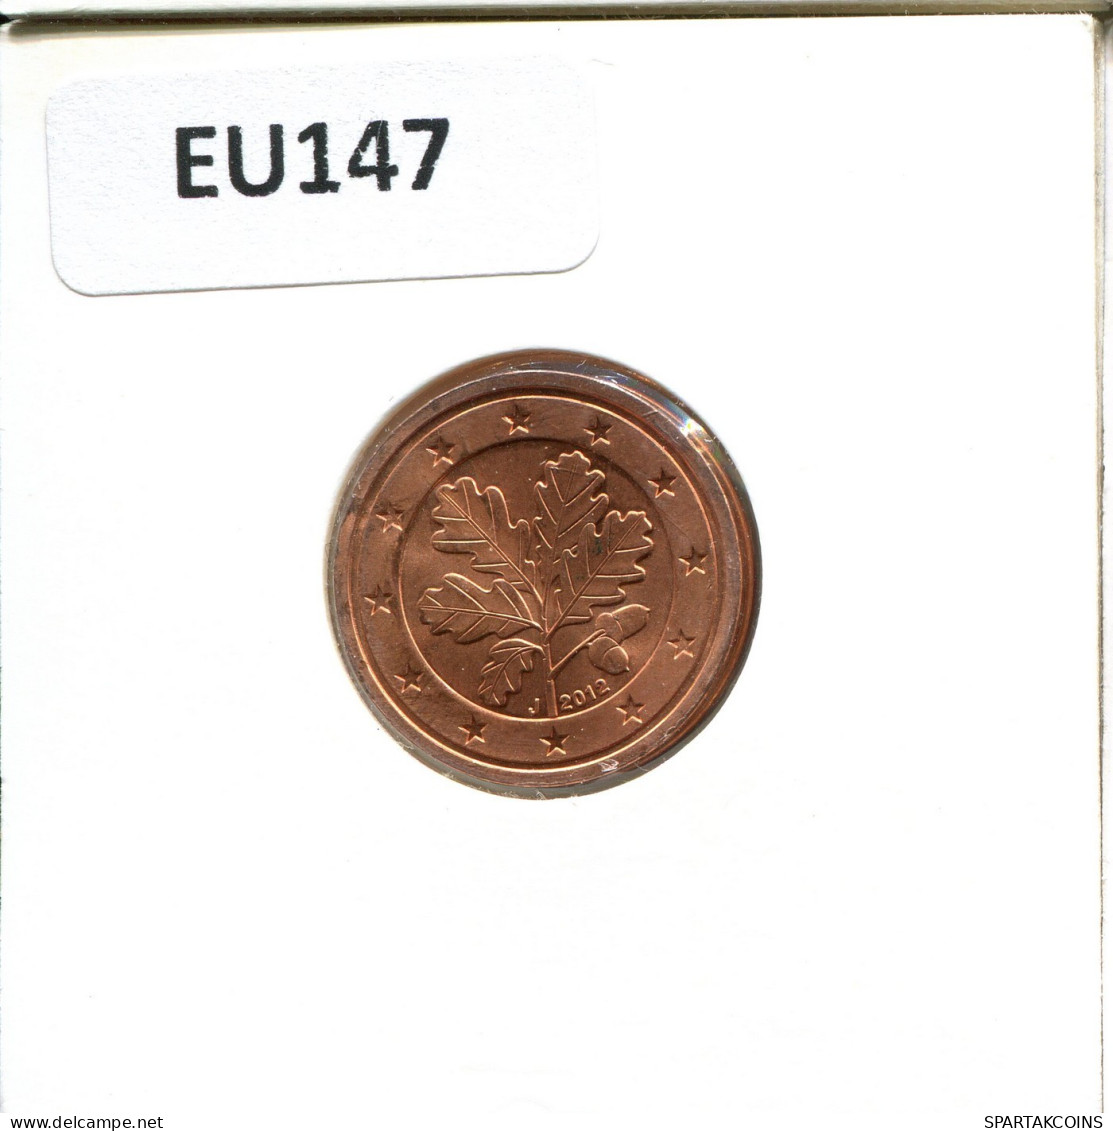 2 EURO CENTS 2012 ALEMANIA Moneda GERMANY #EU147.E.A - Germany